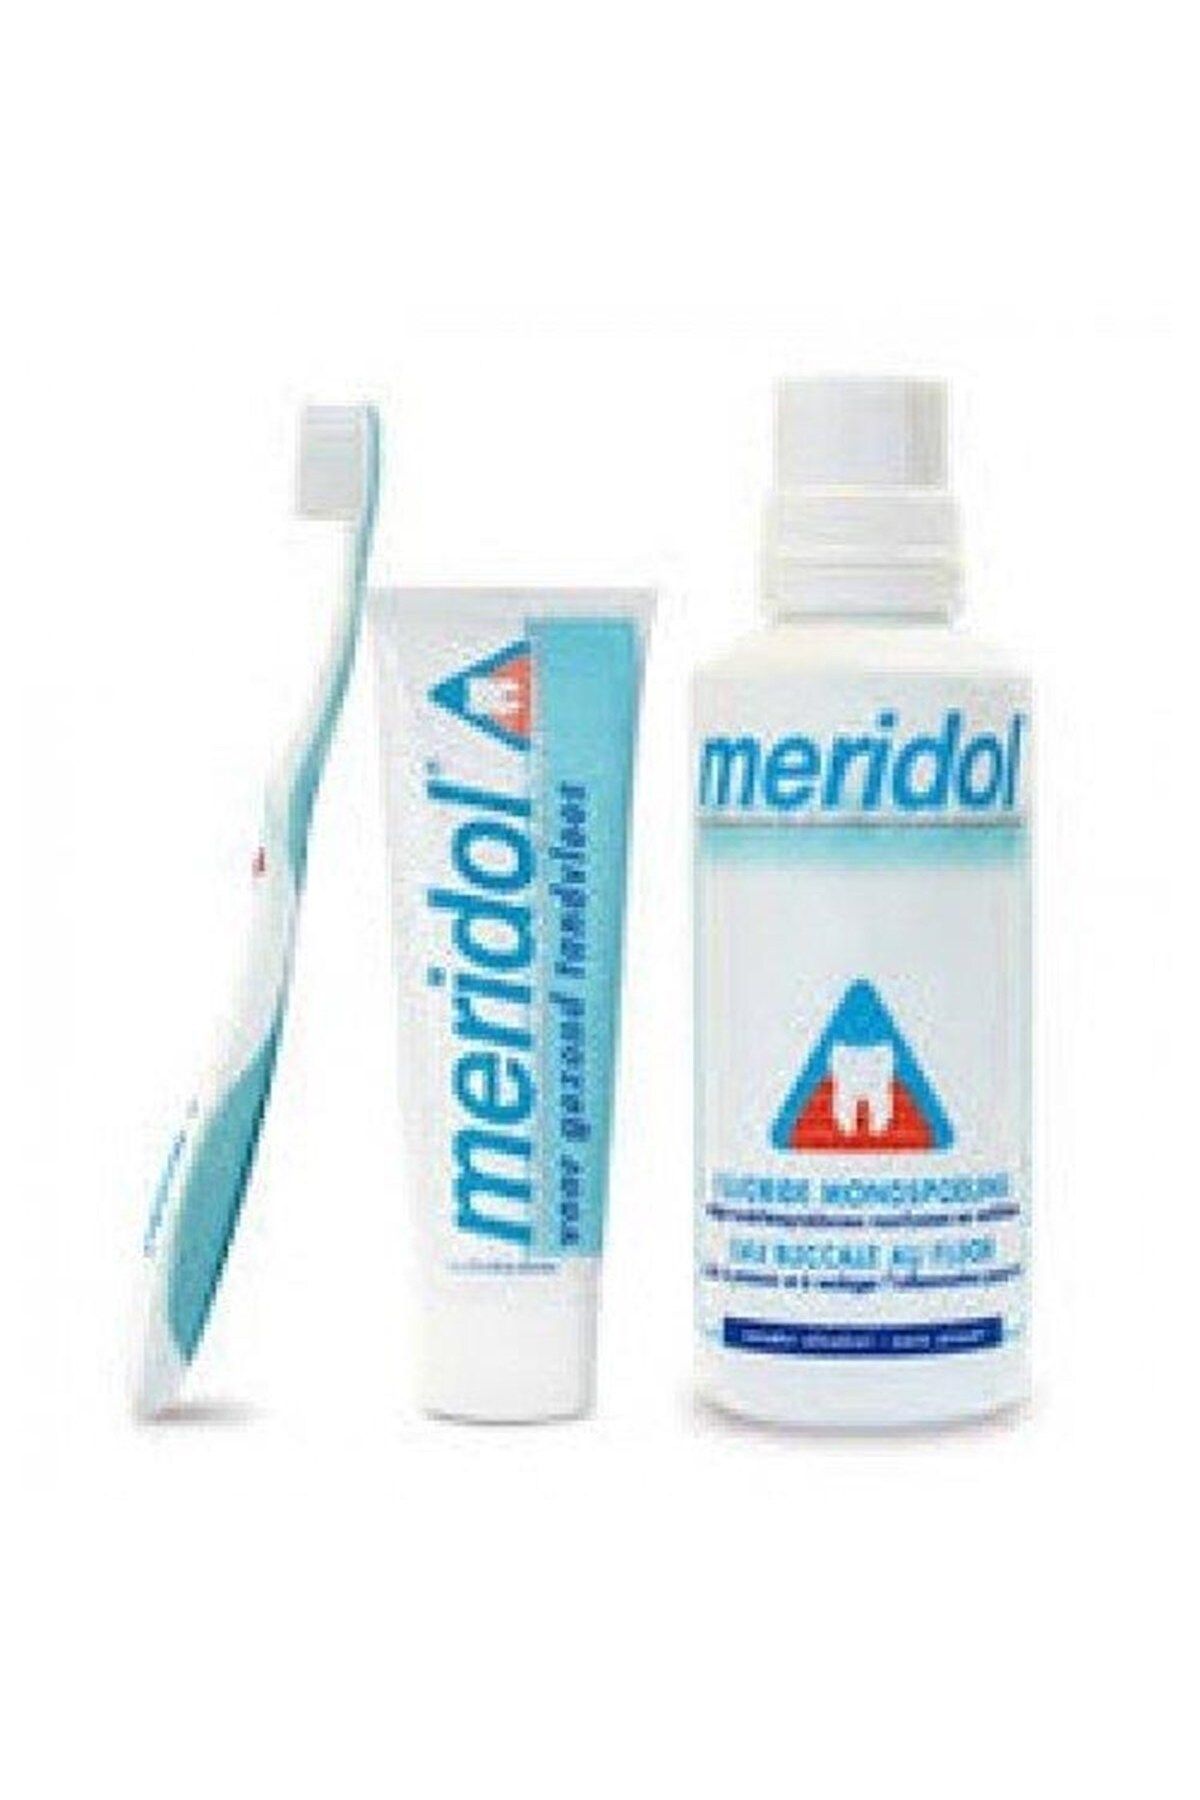 Meridol 3 Lü Set Ağız Bakım Suyu Diş Fırçası Diş Macunu